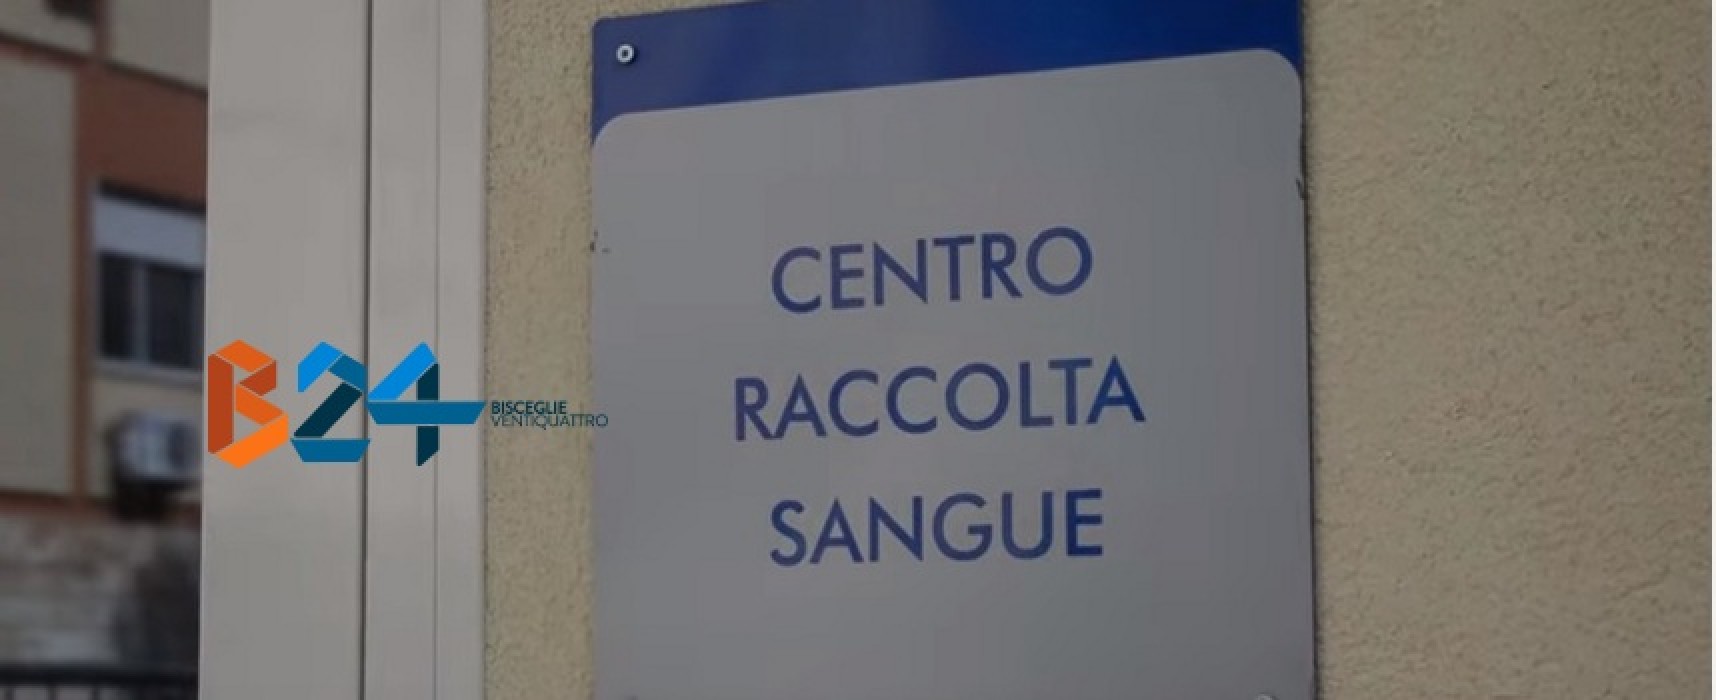 Avis, raccolta sangue al centro trasfusionale dell’ospedale “Vittorio Emanuele II”